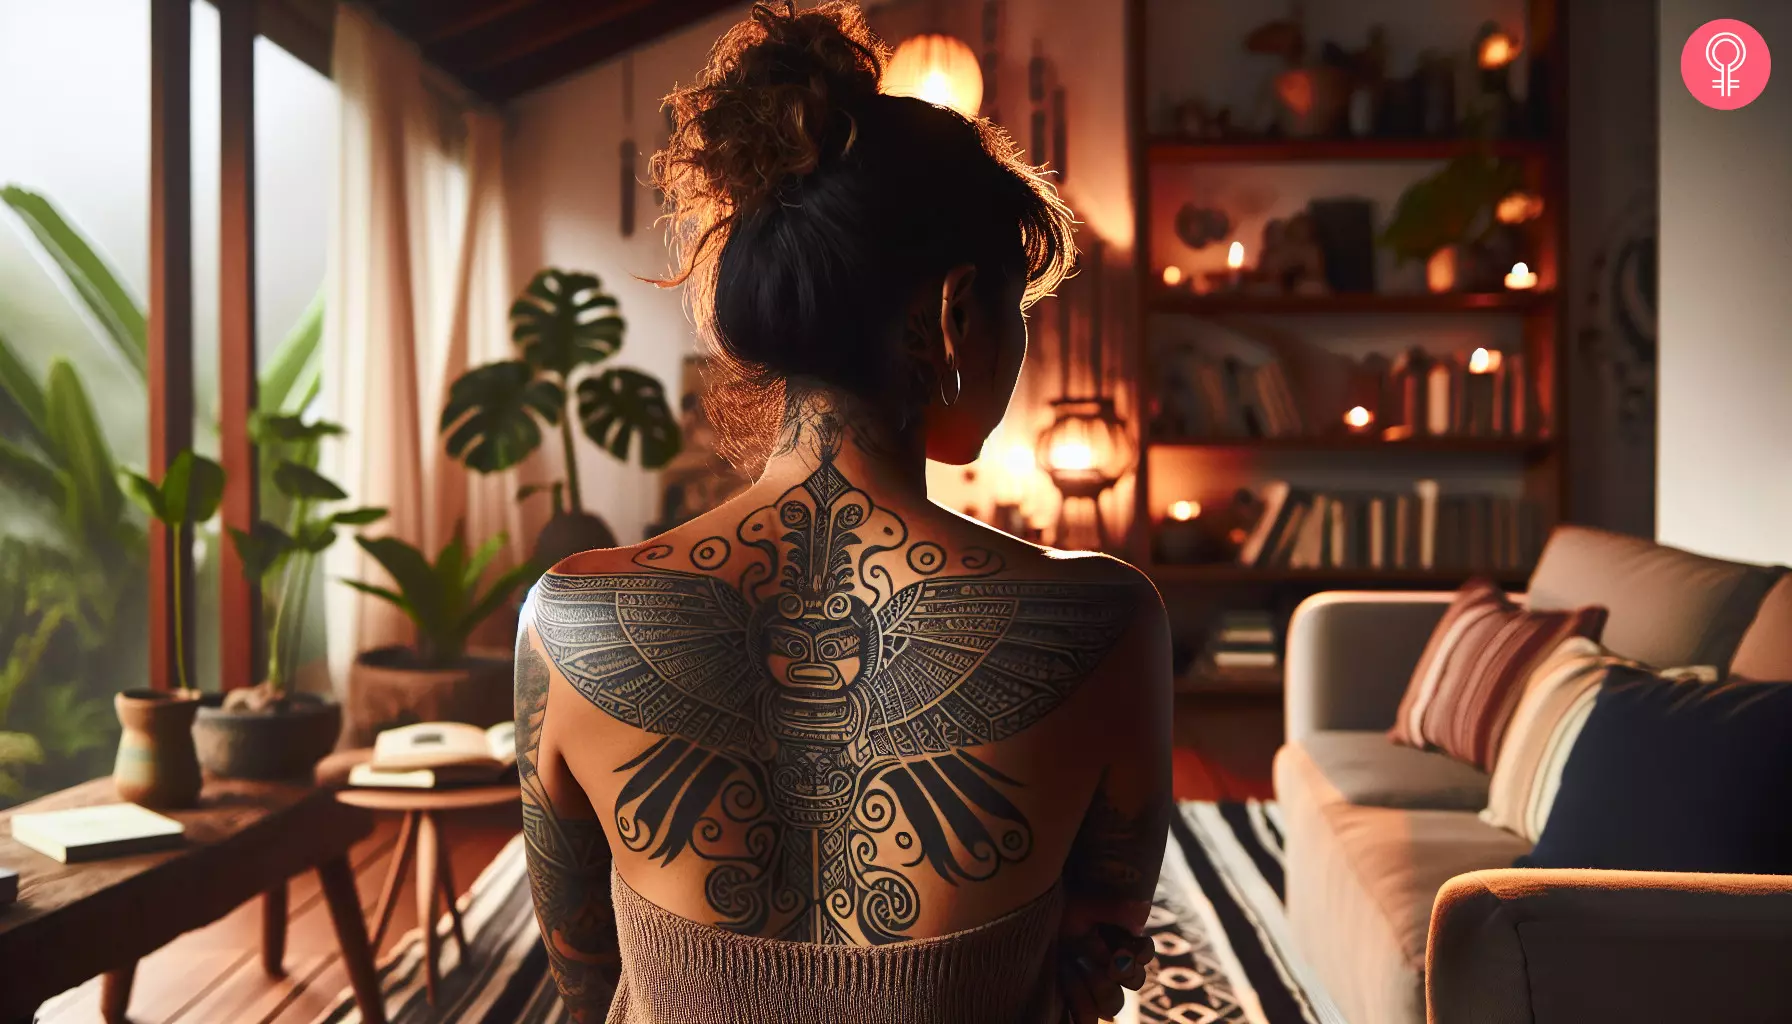 A Mayan bat tattoo on a woman’s back